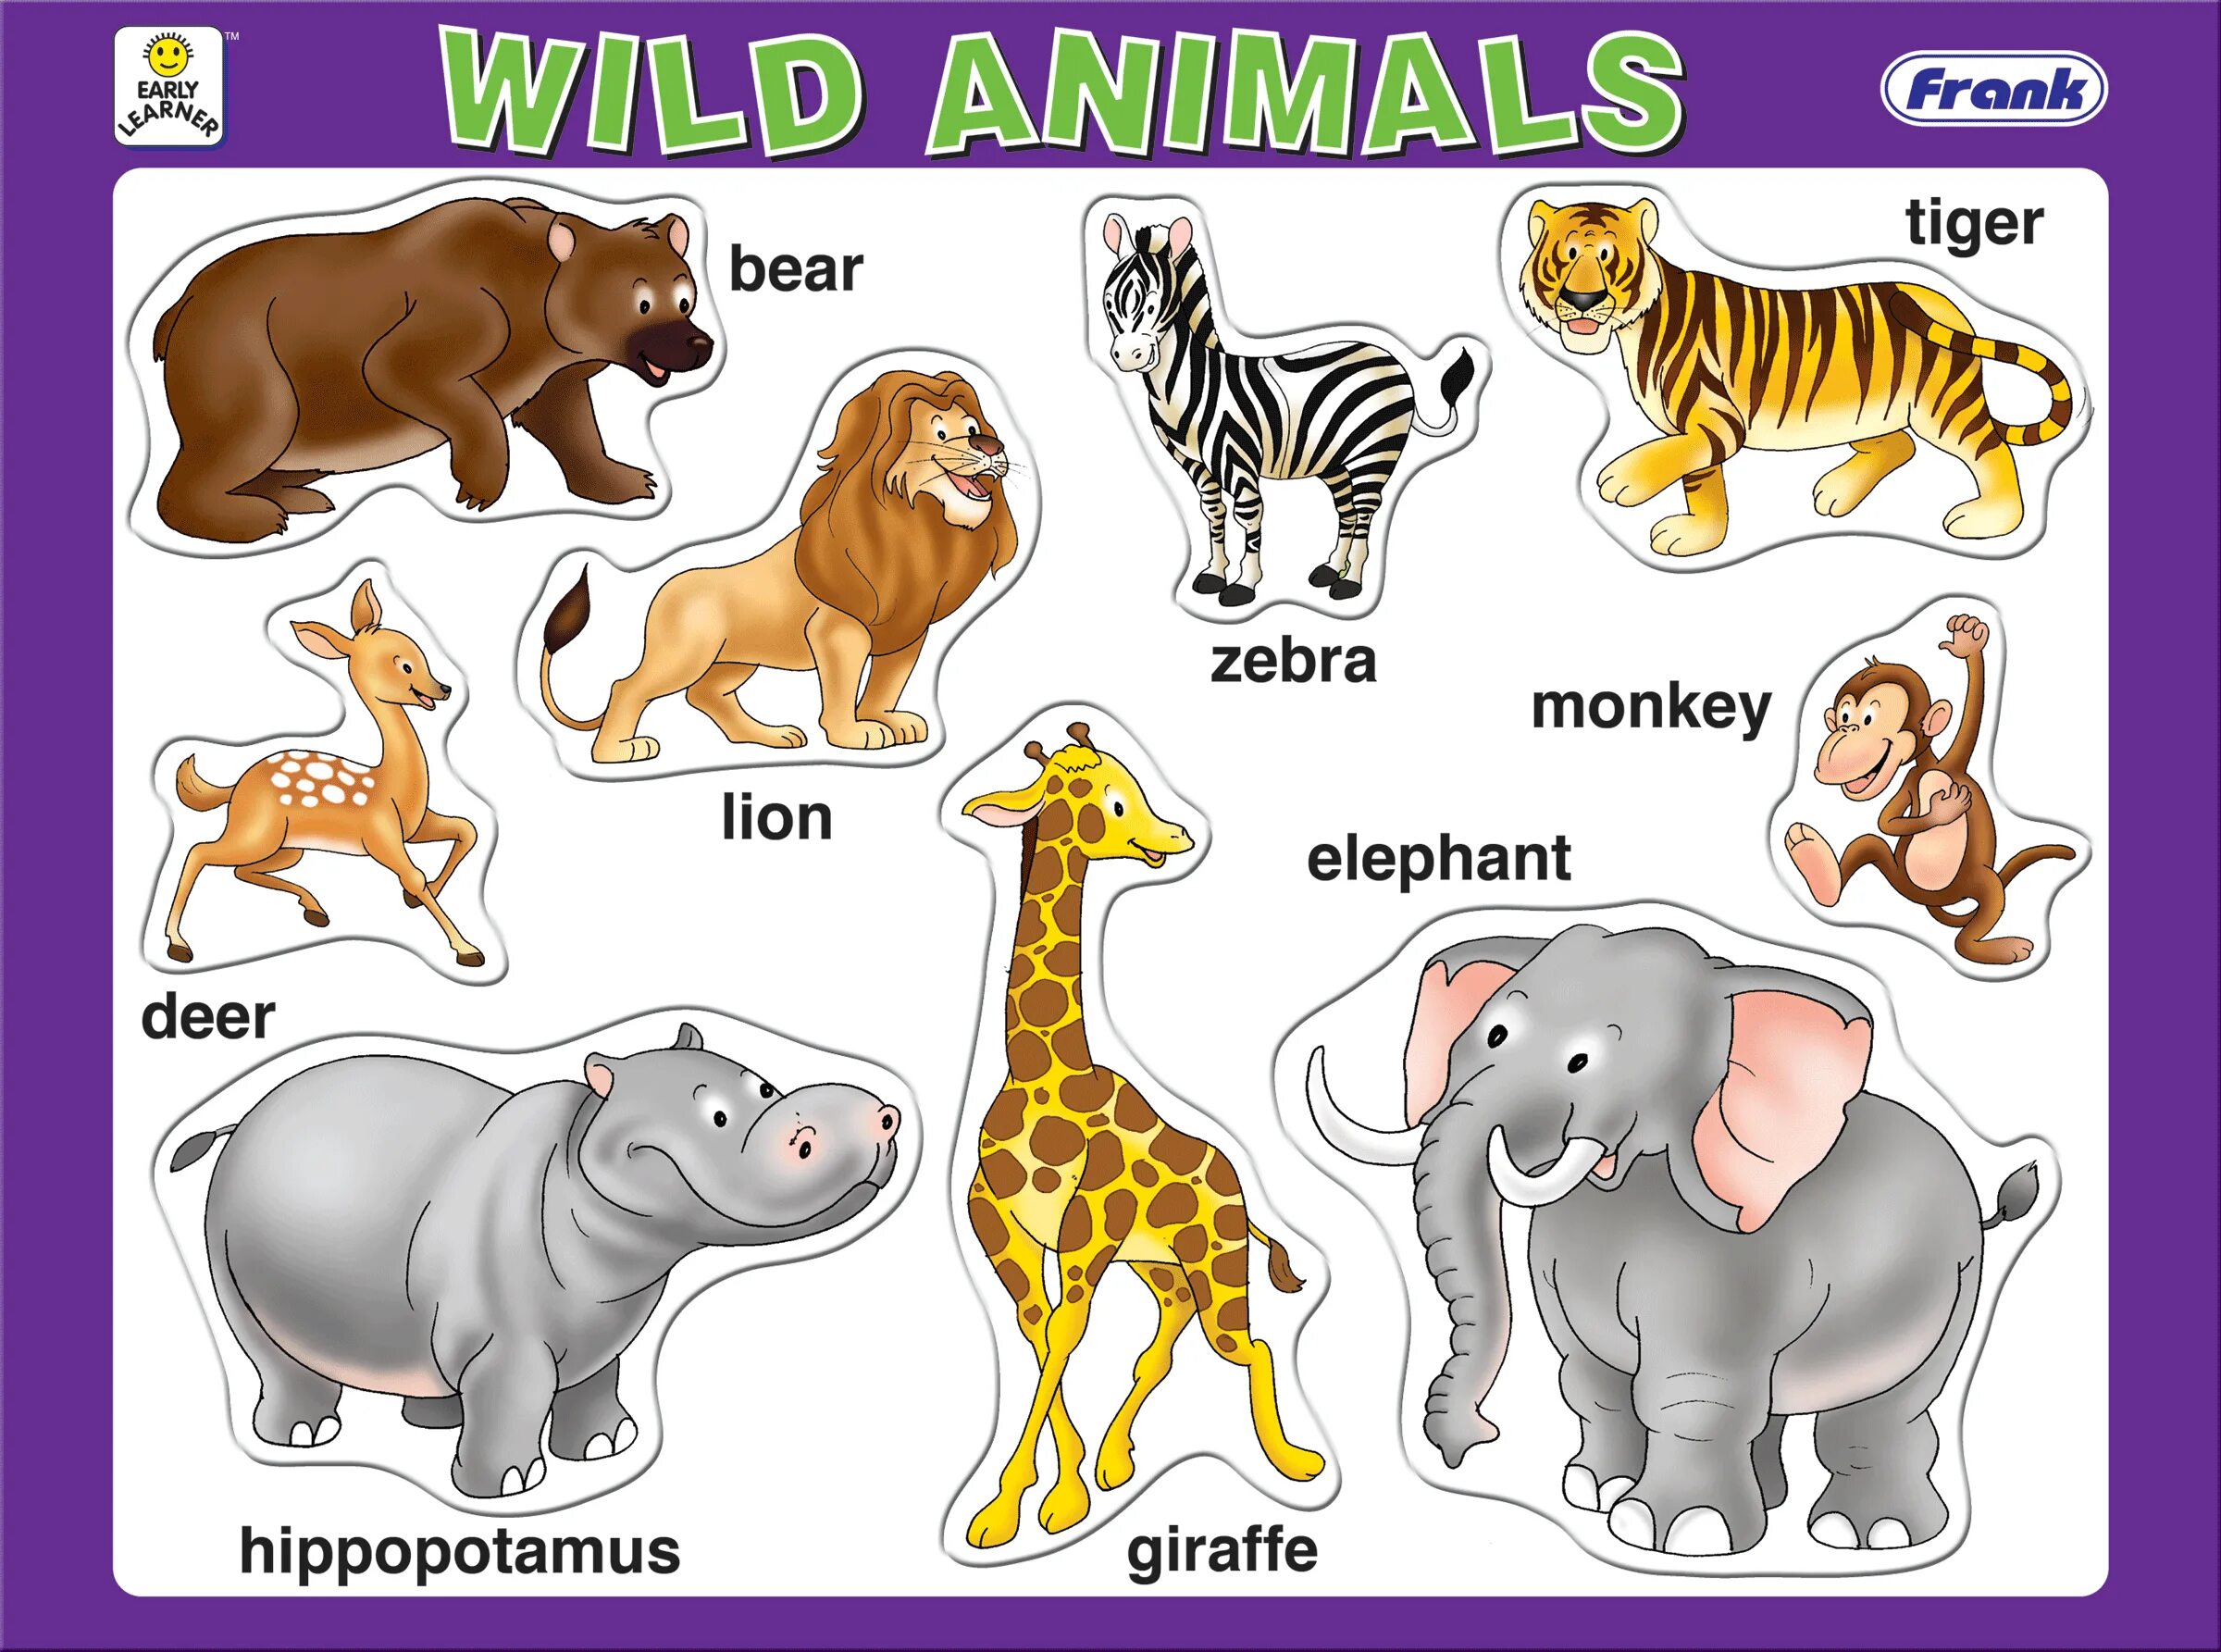 Английский язык 3 класс дикие животные. Для детей. Животные. Животные на английском для детей. Дикие животные на английском для детей. Изображения животных для детей.